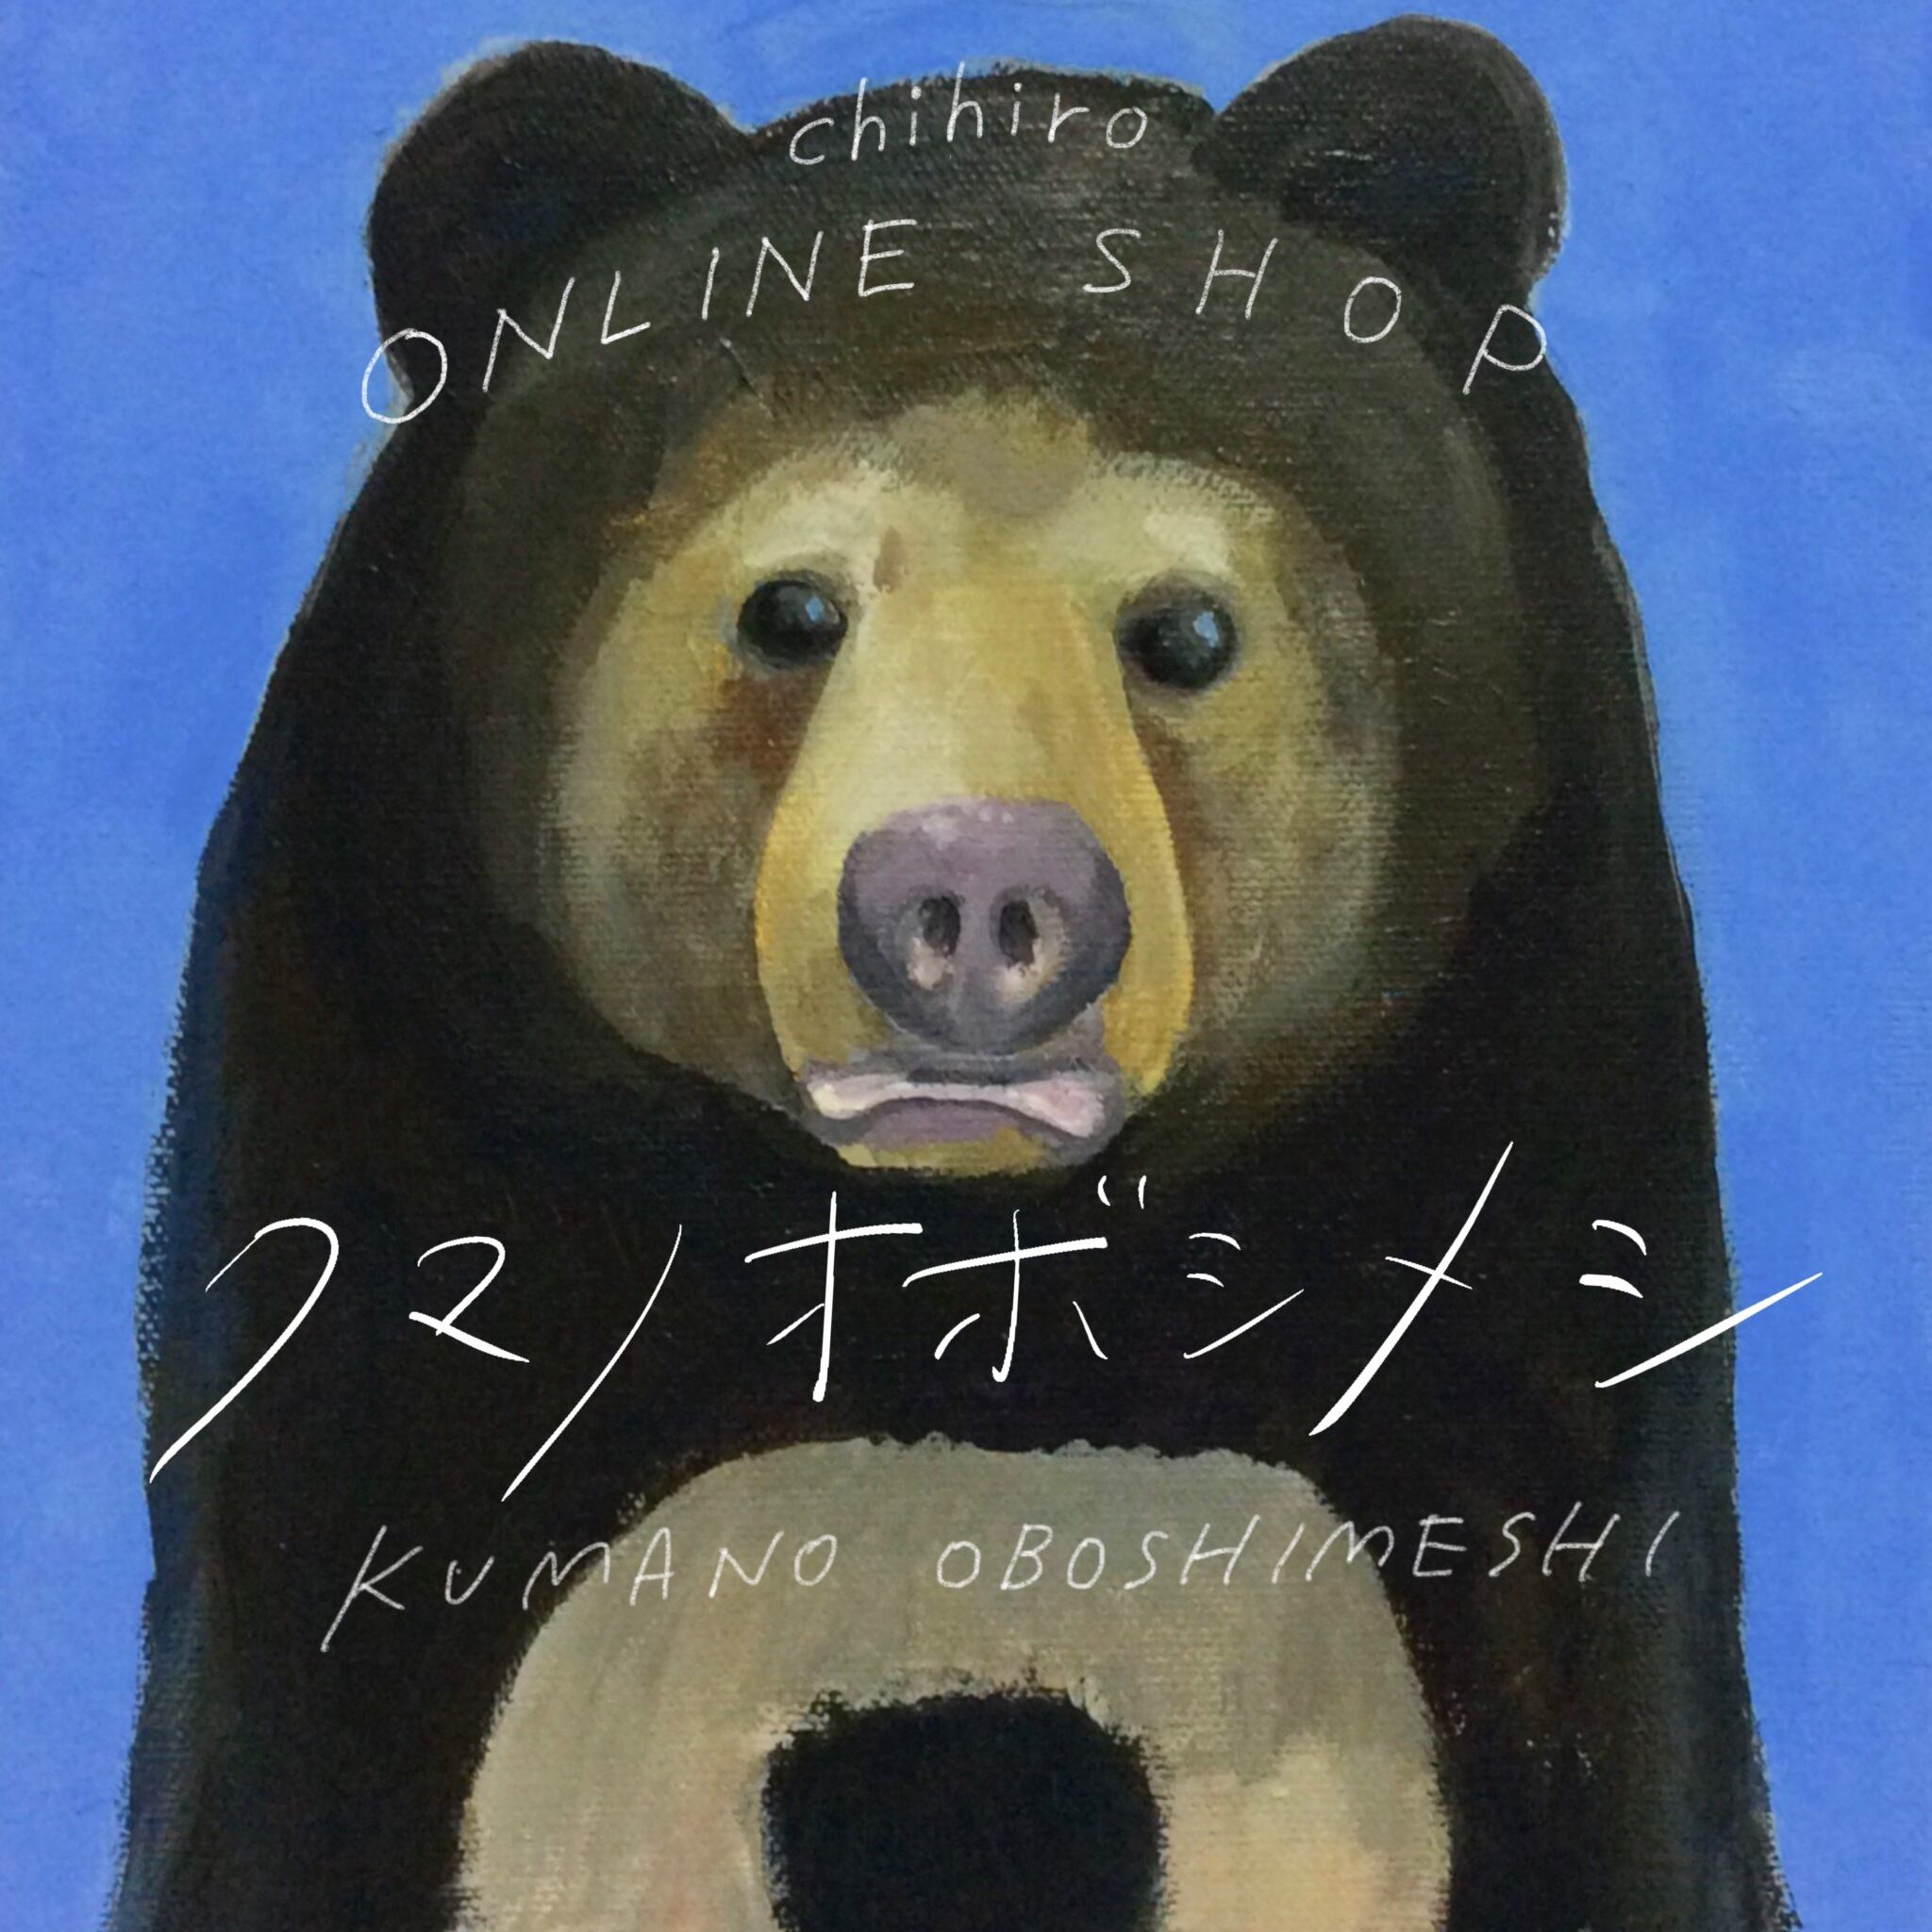 chihiro online shop クマノオボシメシ